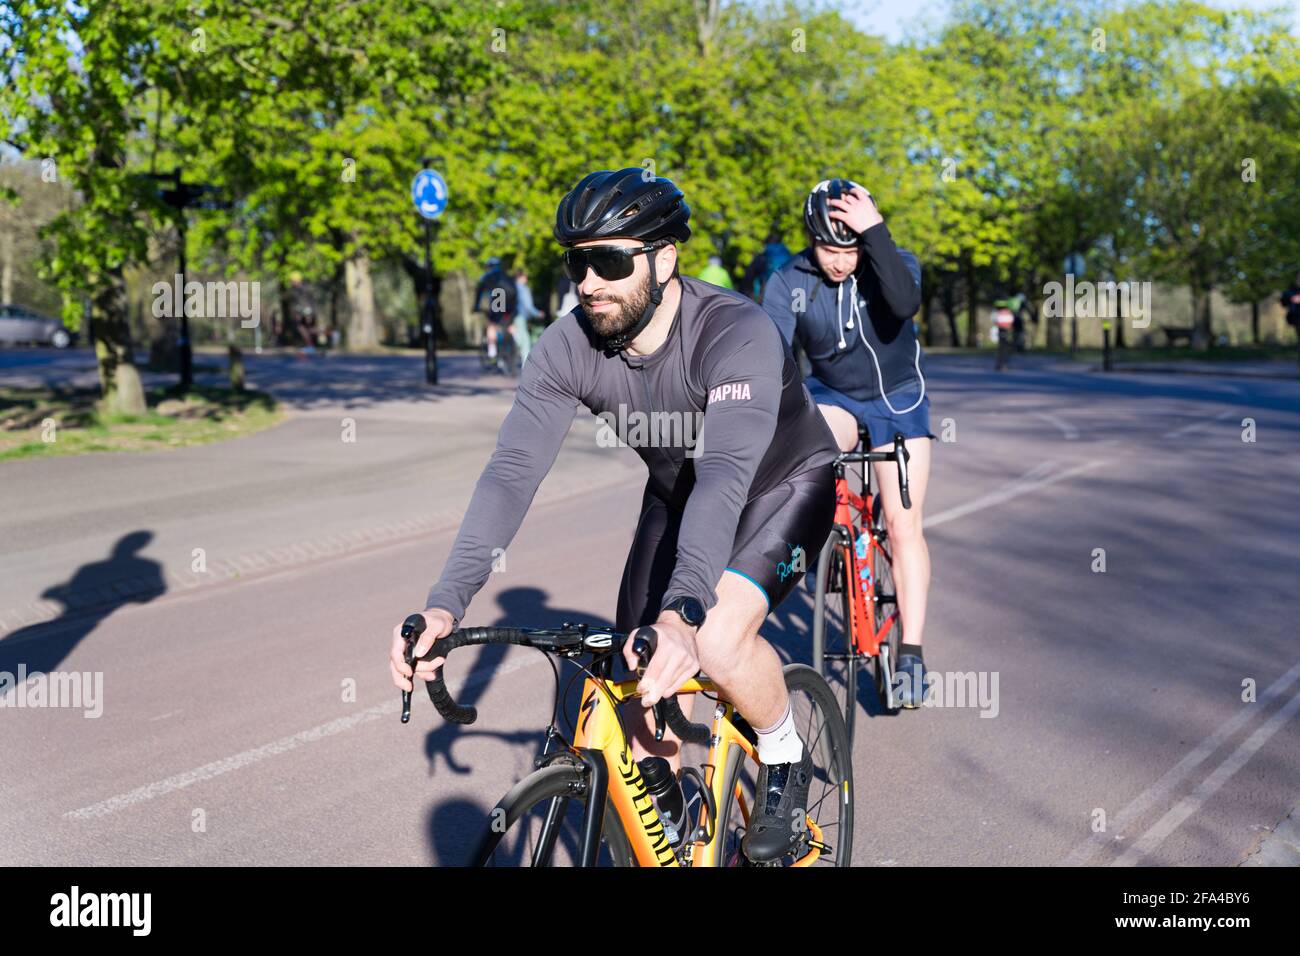 Deux cyclistes s'entraîner à London greenwich Park, exercice en plein air, garder la forme, Angleterre Banque D'Images